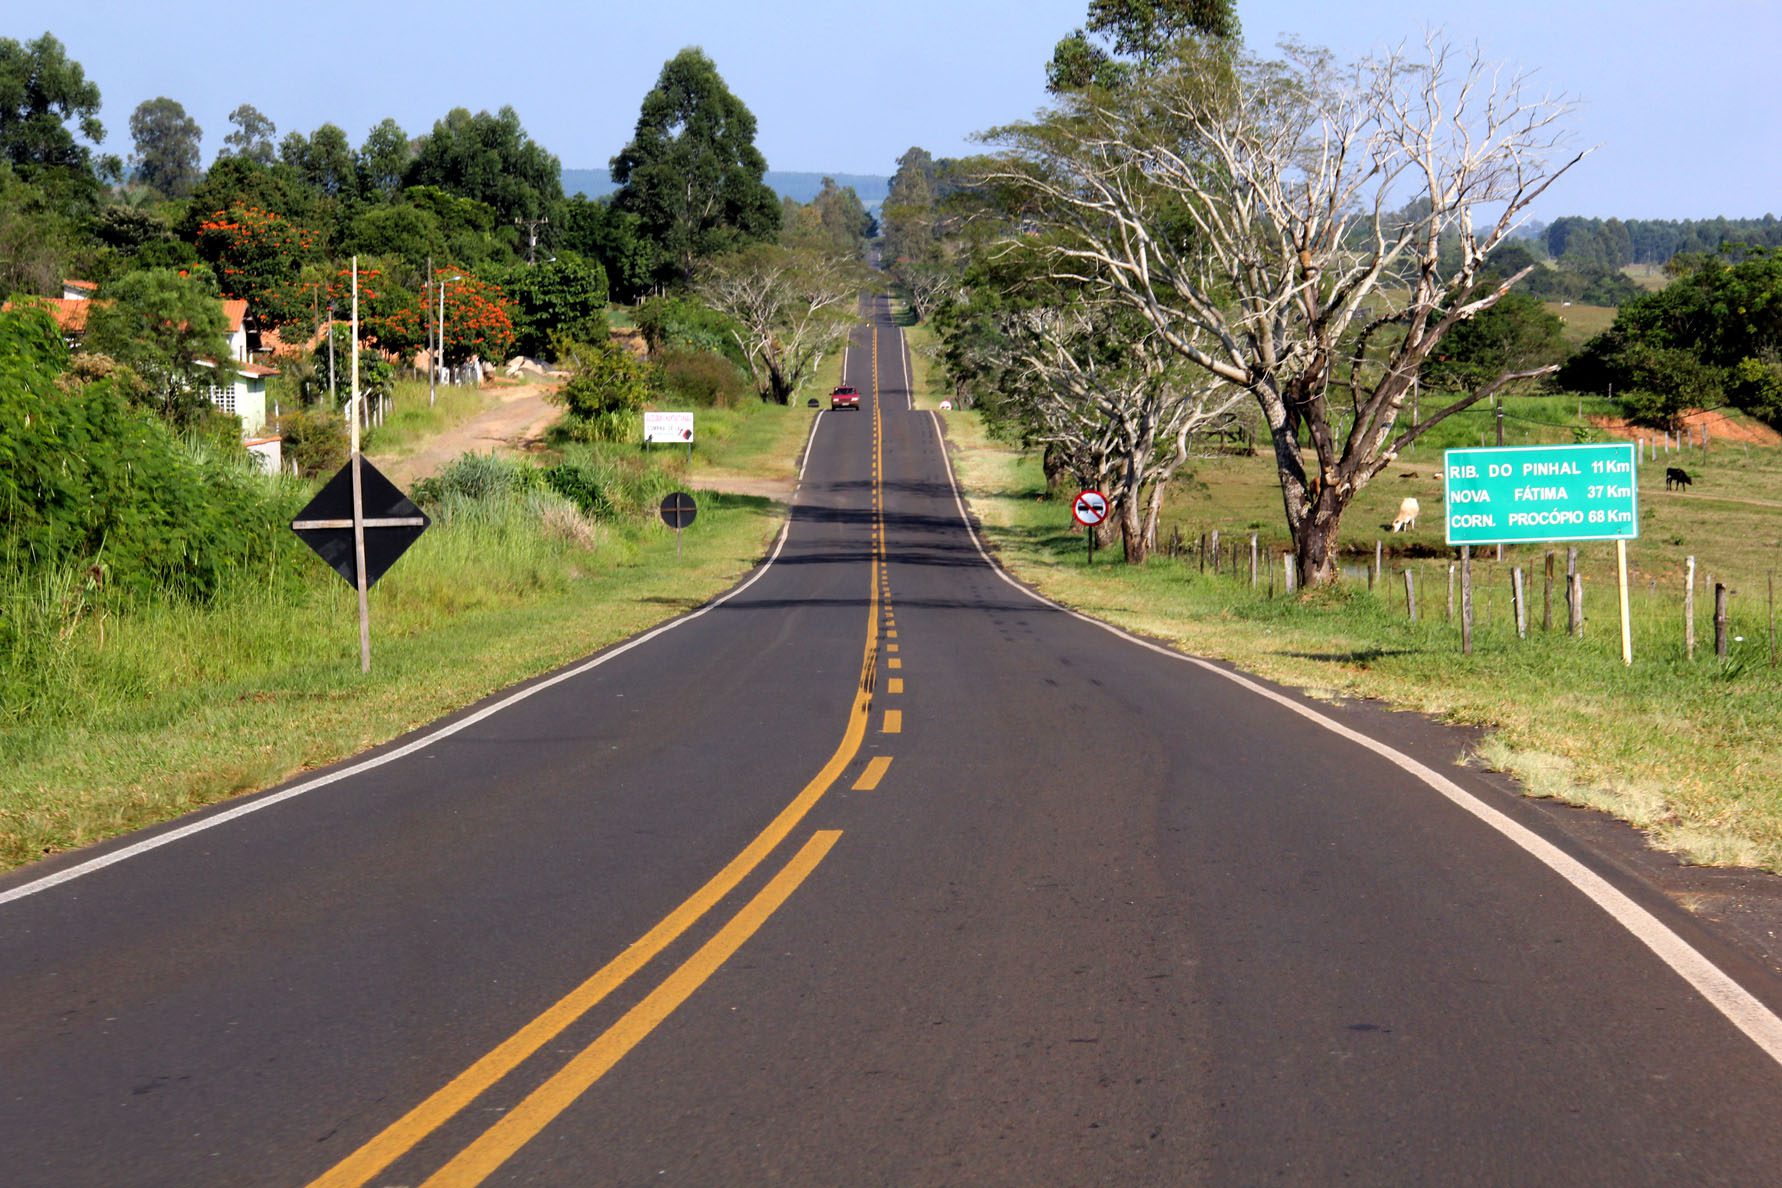 Obras de manutenção do DER melhoram rodovias no Norte Pioneiro. Foto: Jorge Woll/DER